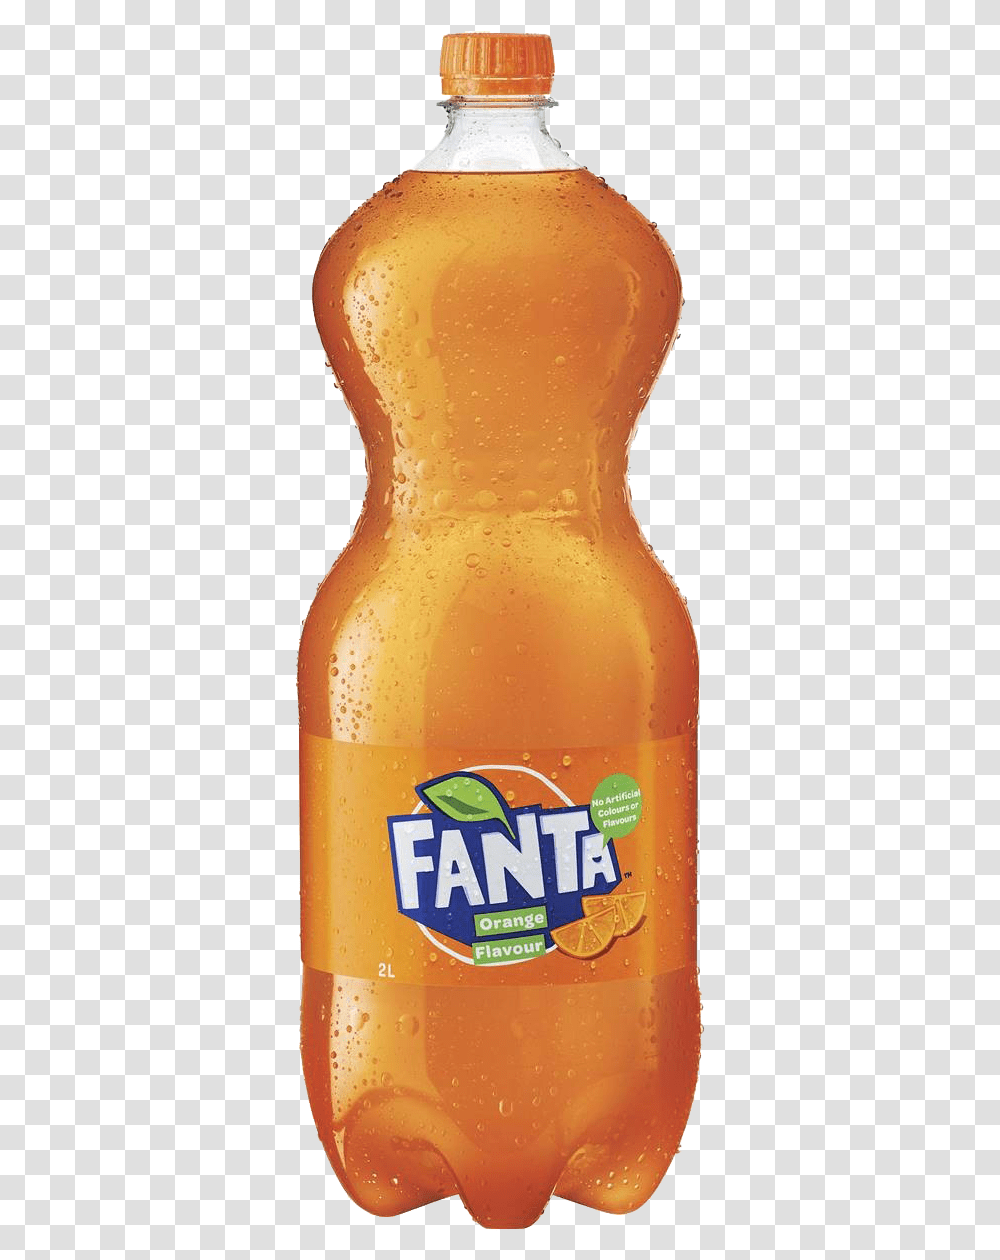 Fanta Free Pic Fanta 1.25 L, Juice, Beverage, Drink, Orange Juice Transparent Png